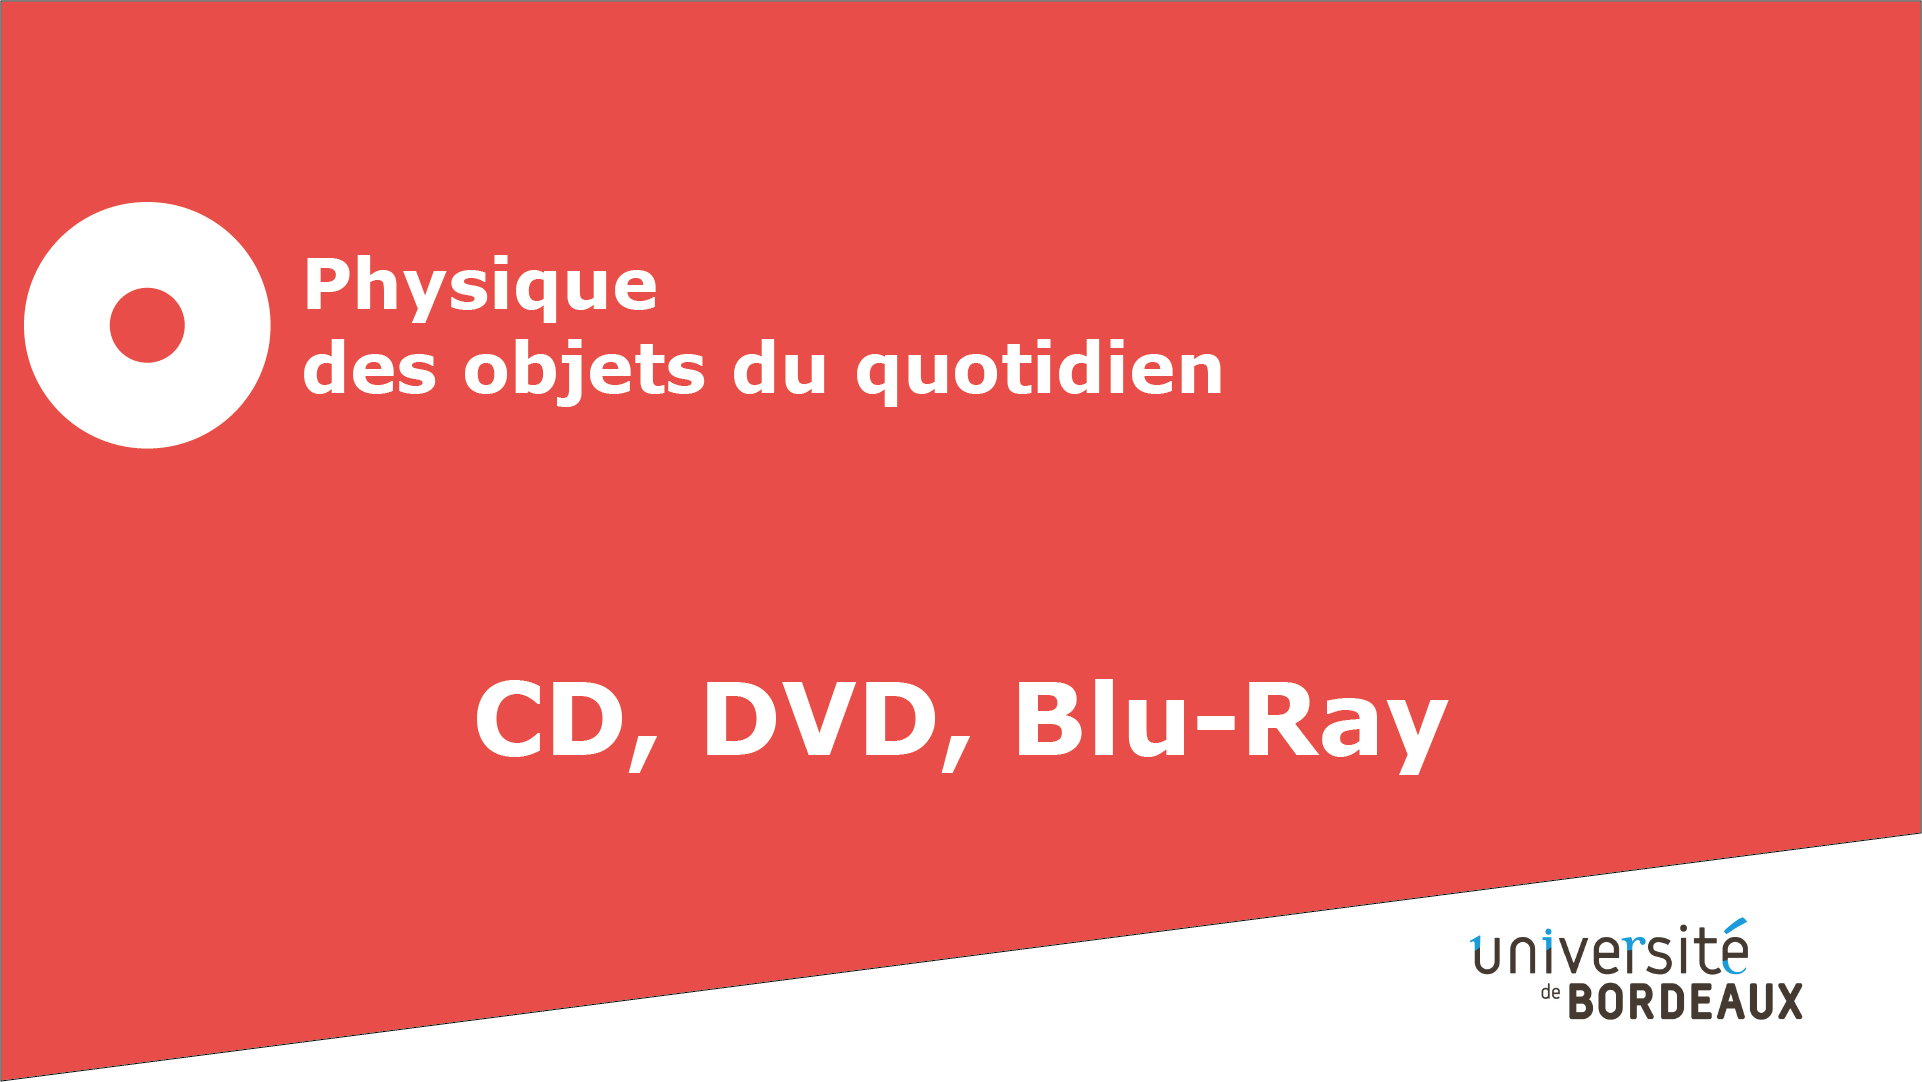 2 - CD, DVD, Blu-ray / Retour sur l'expérience